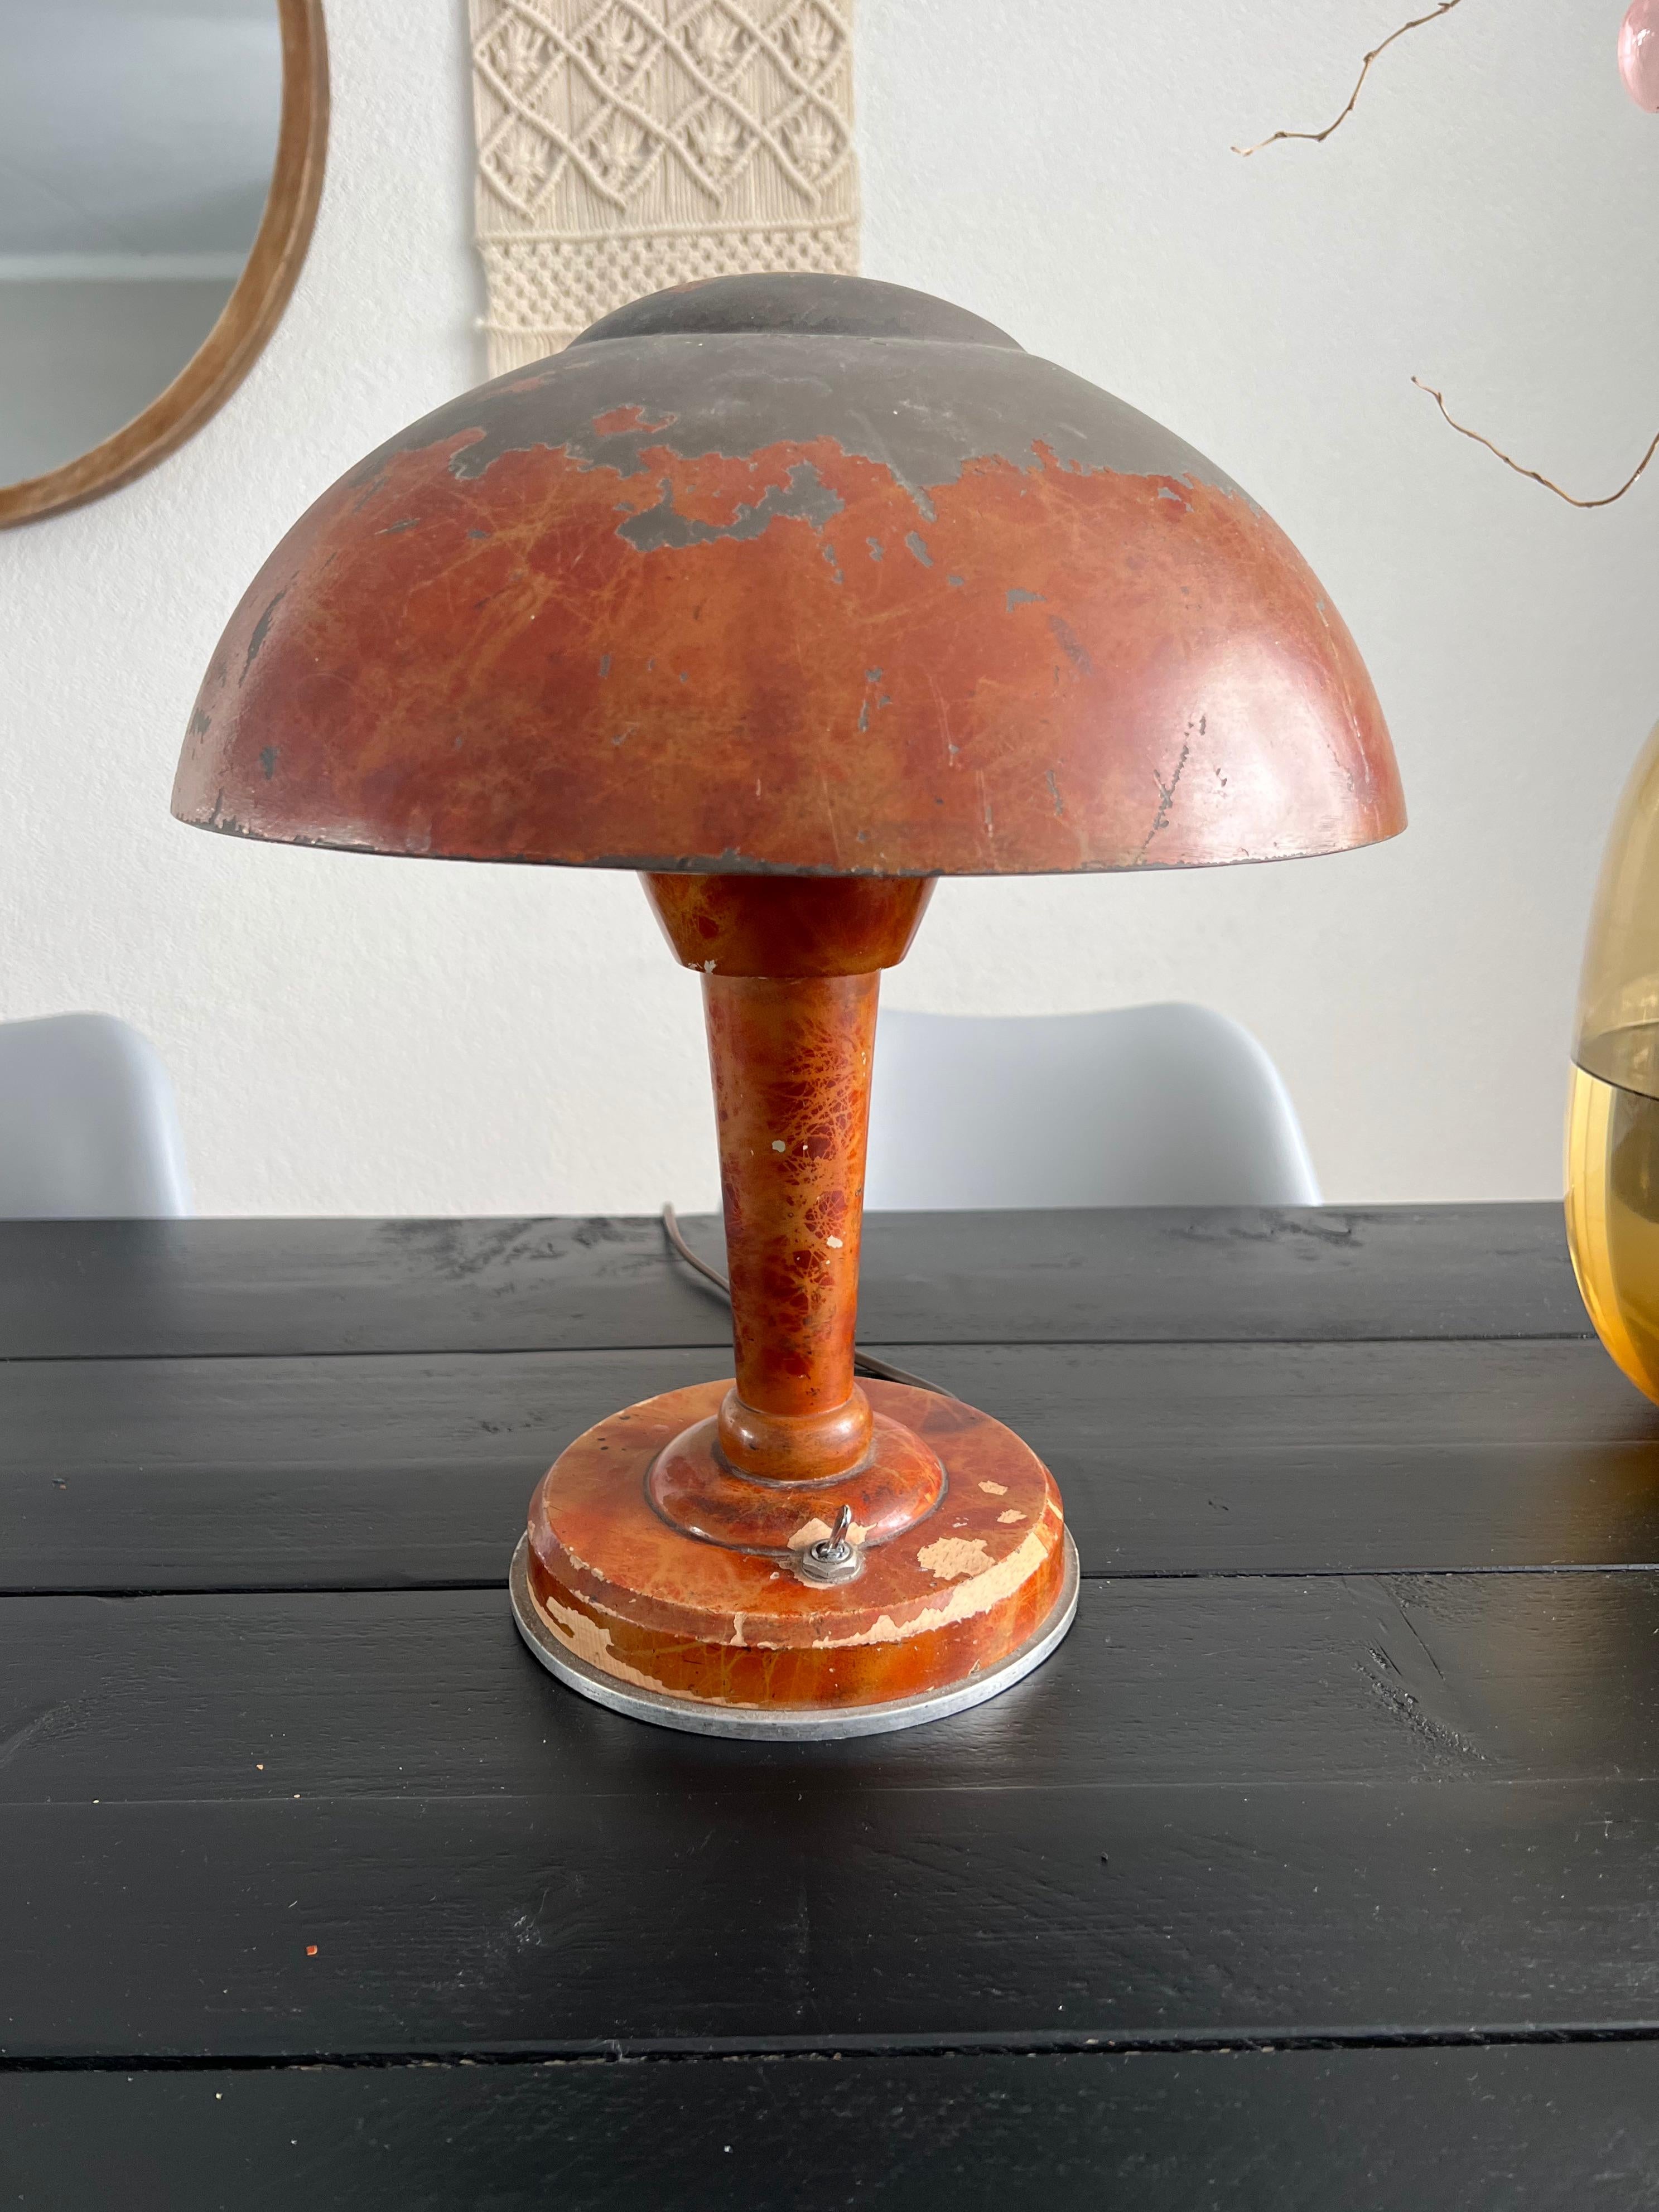 lampe de table au design champignon, 100% non restaurée et en état d'origine.

Cette œuvre d'art lumineuse très inhabituelle et moderniste porte la marque du fabricant M. Sabino sur la base et constitue une autre de nos dernières grandes 